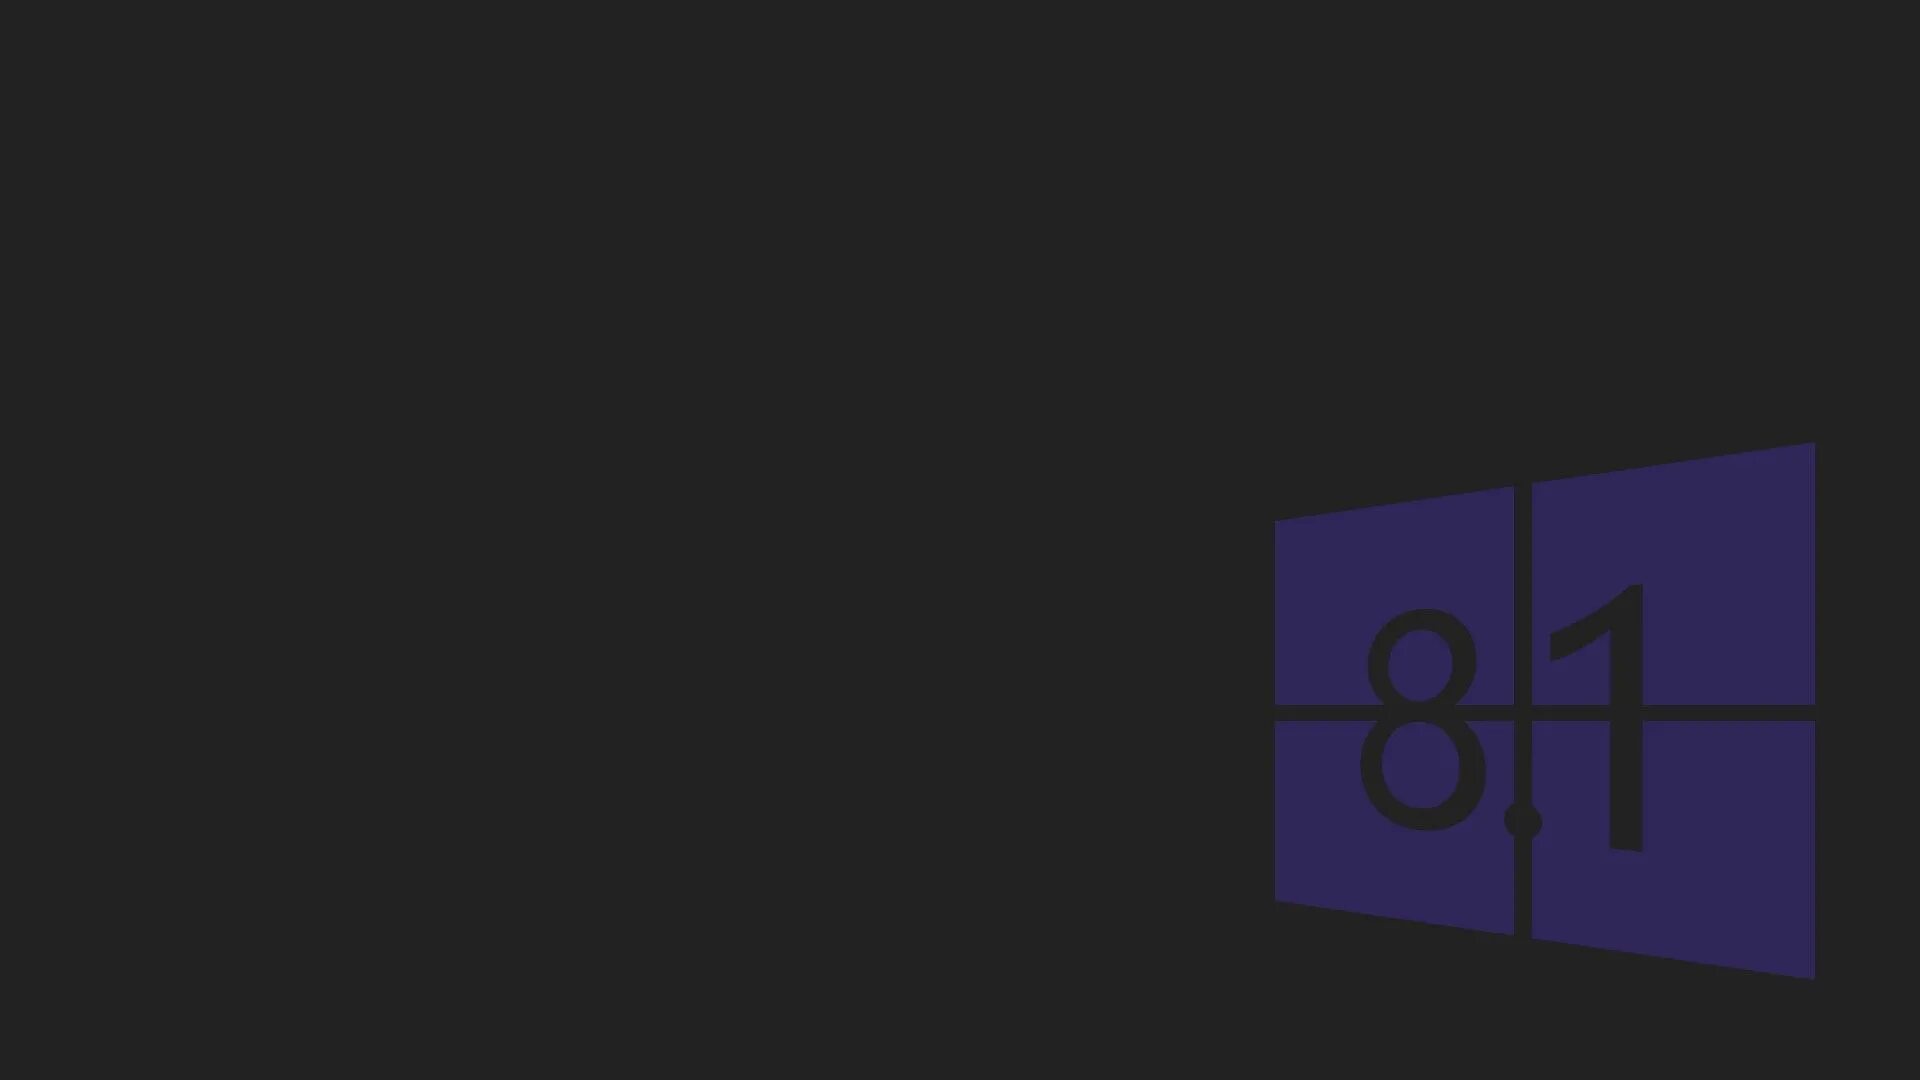 55 08 1 8. Обои Windows. Картинки Windows 8. Windows 8.1 обои. Заставка виндовс 8.